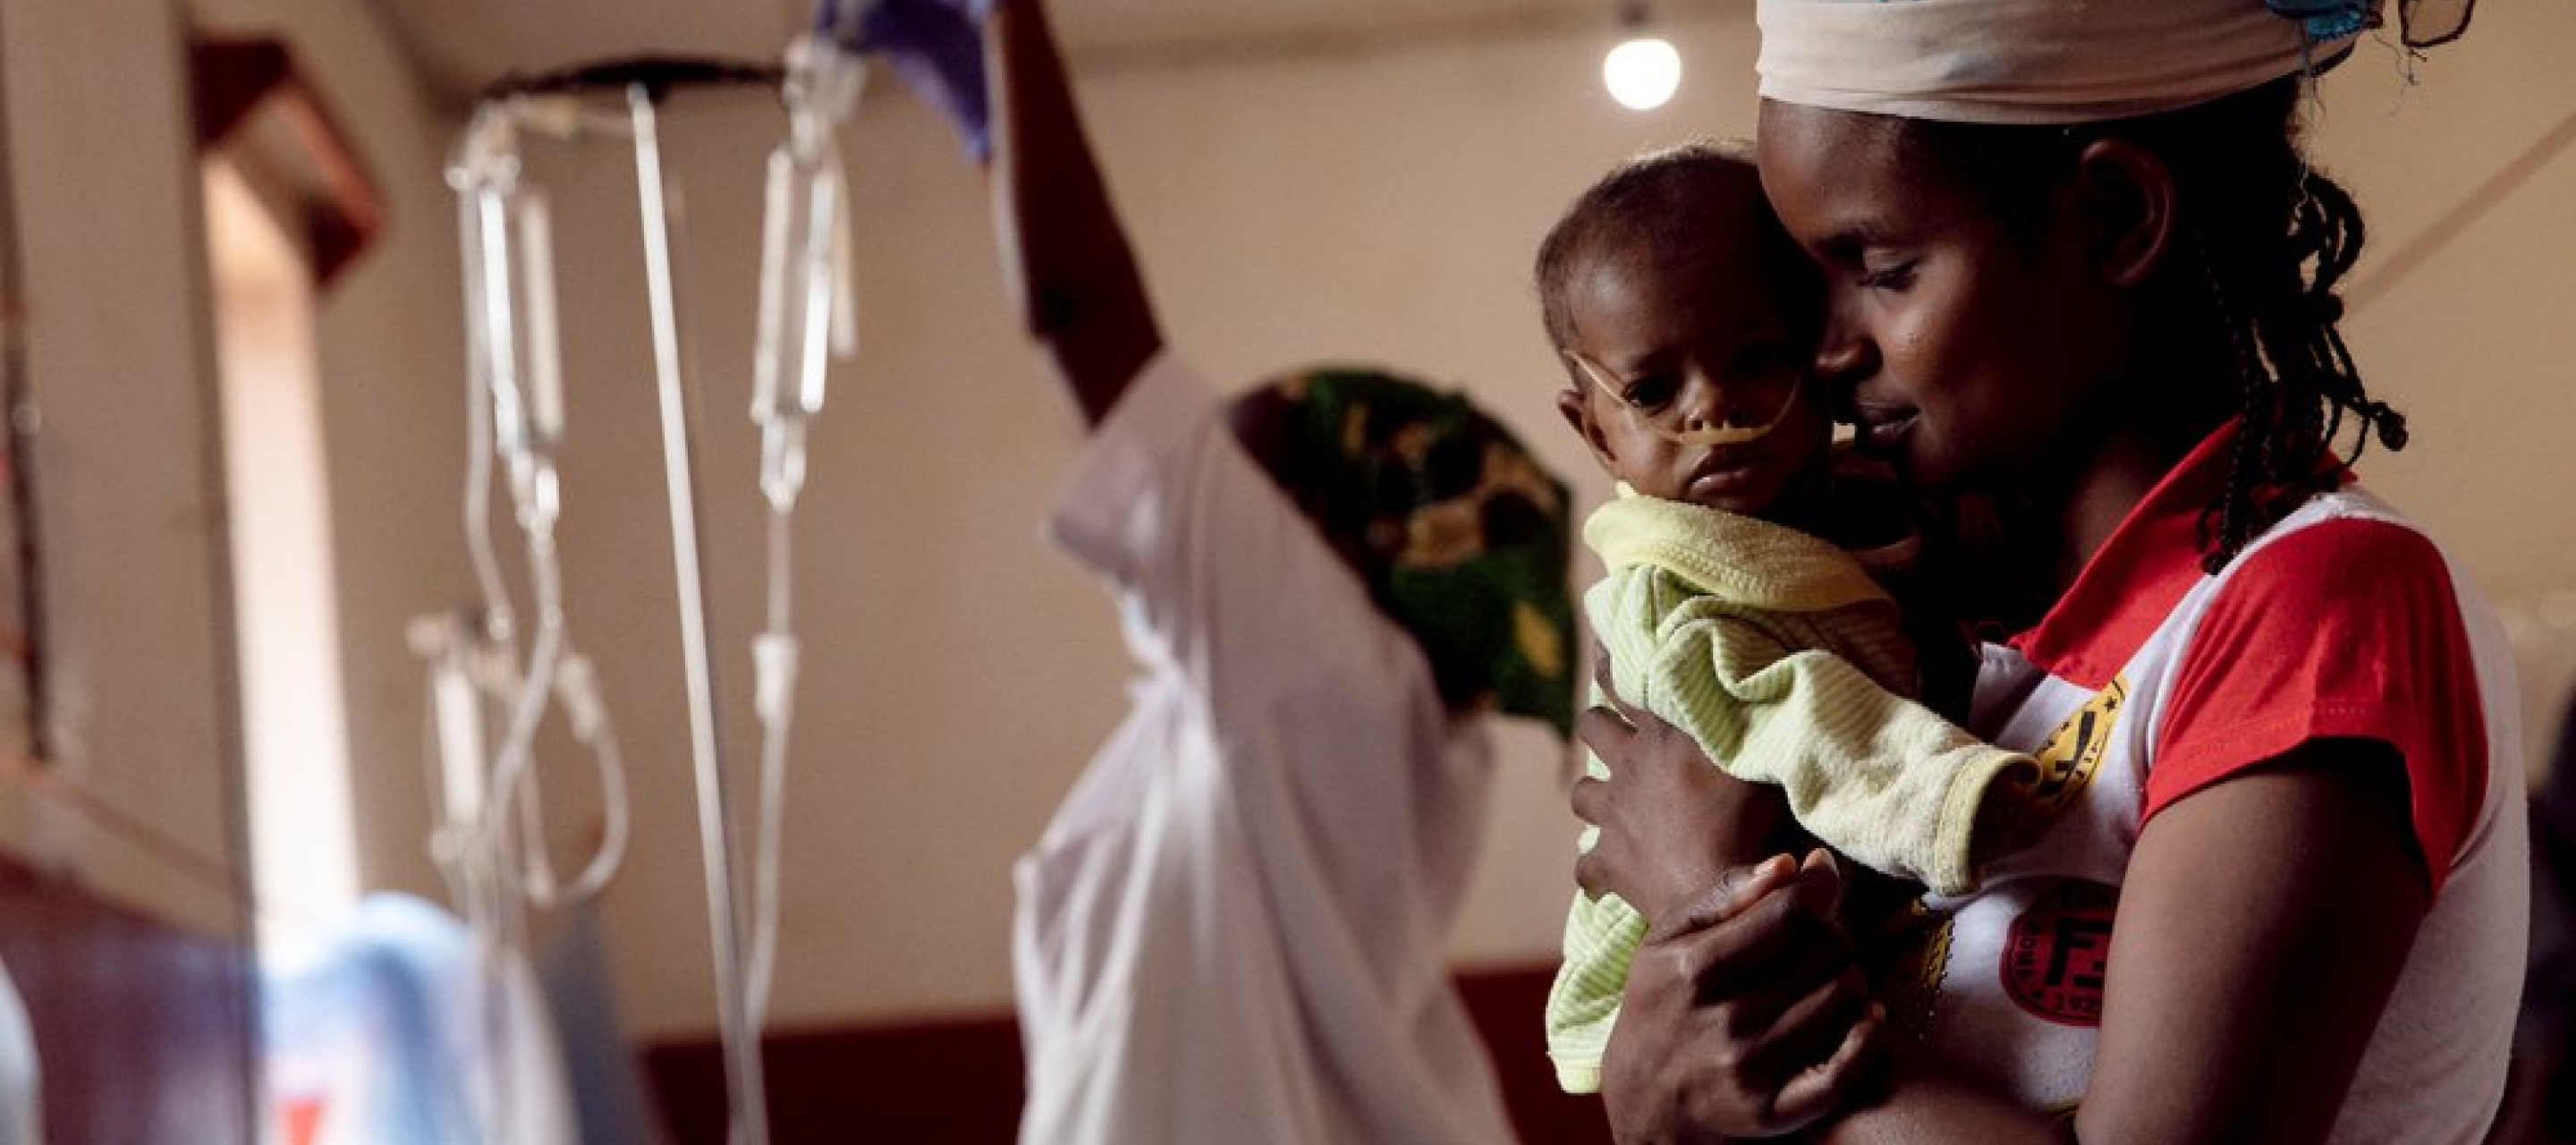 Zentralafrikanische Republik: Mutter hält ihr krankes Kind im Arm. Im Hintergrund ein Mitarbeiterin und Infusionen